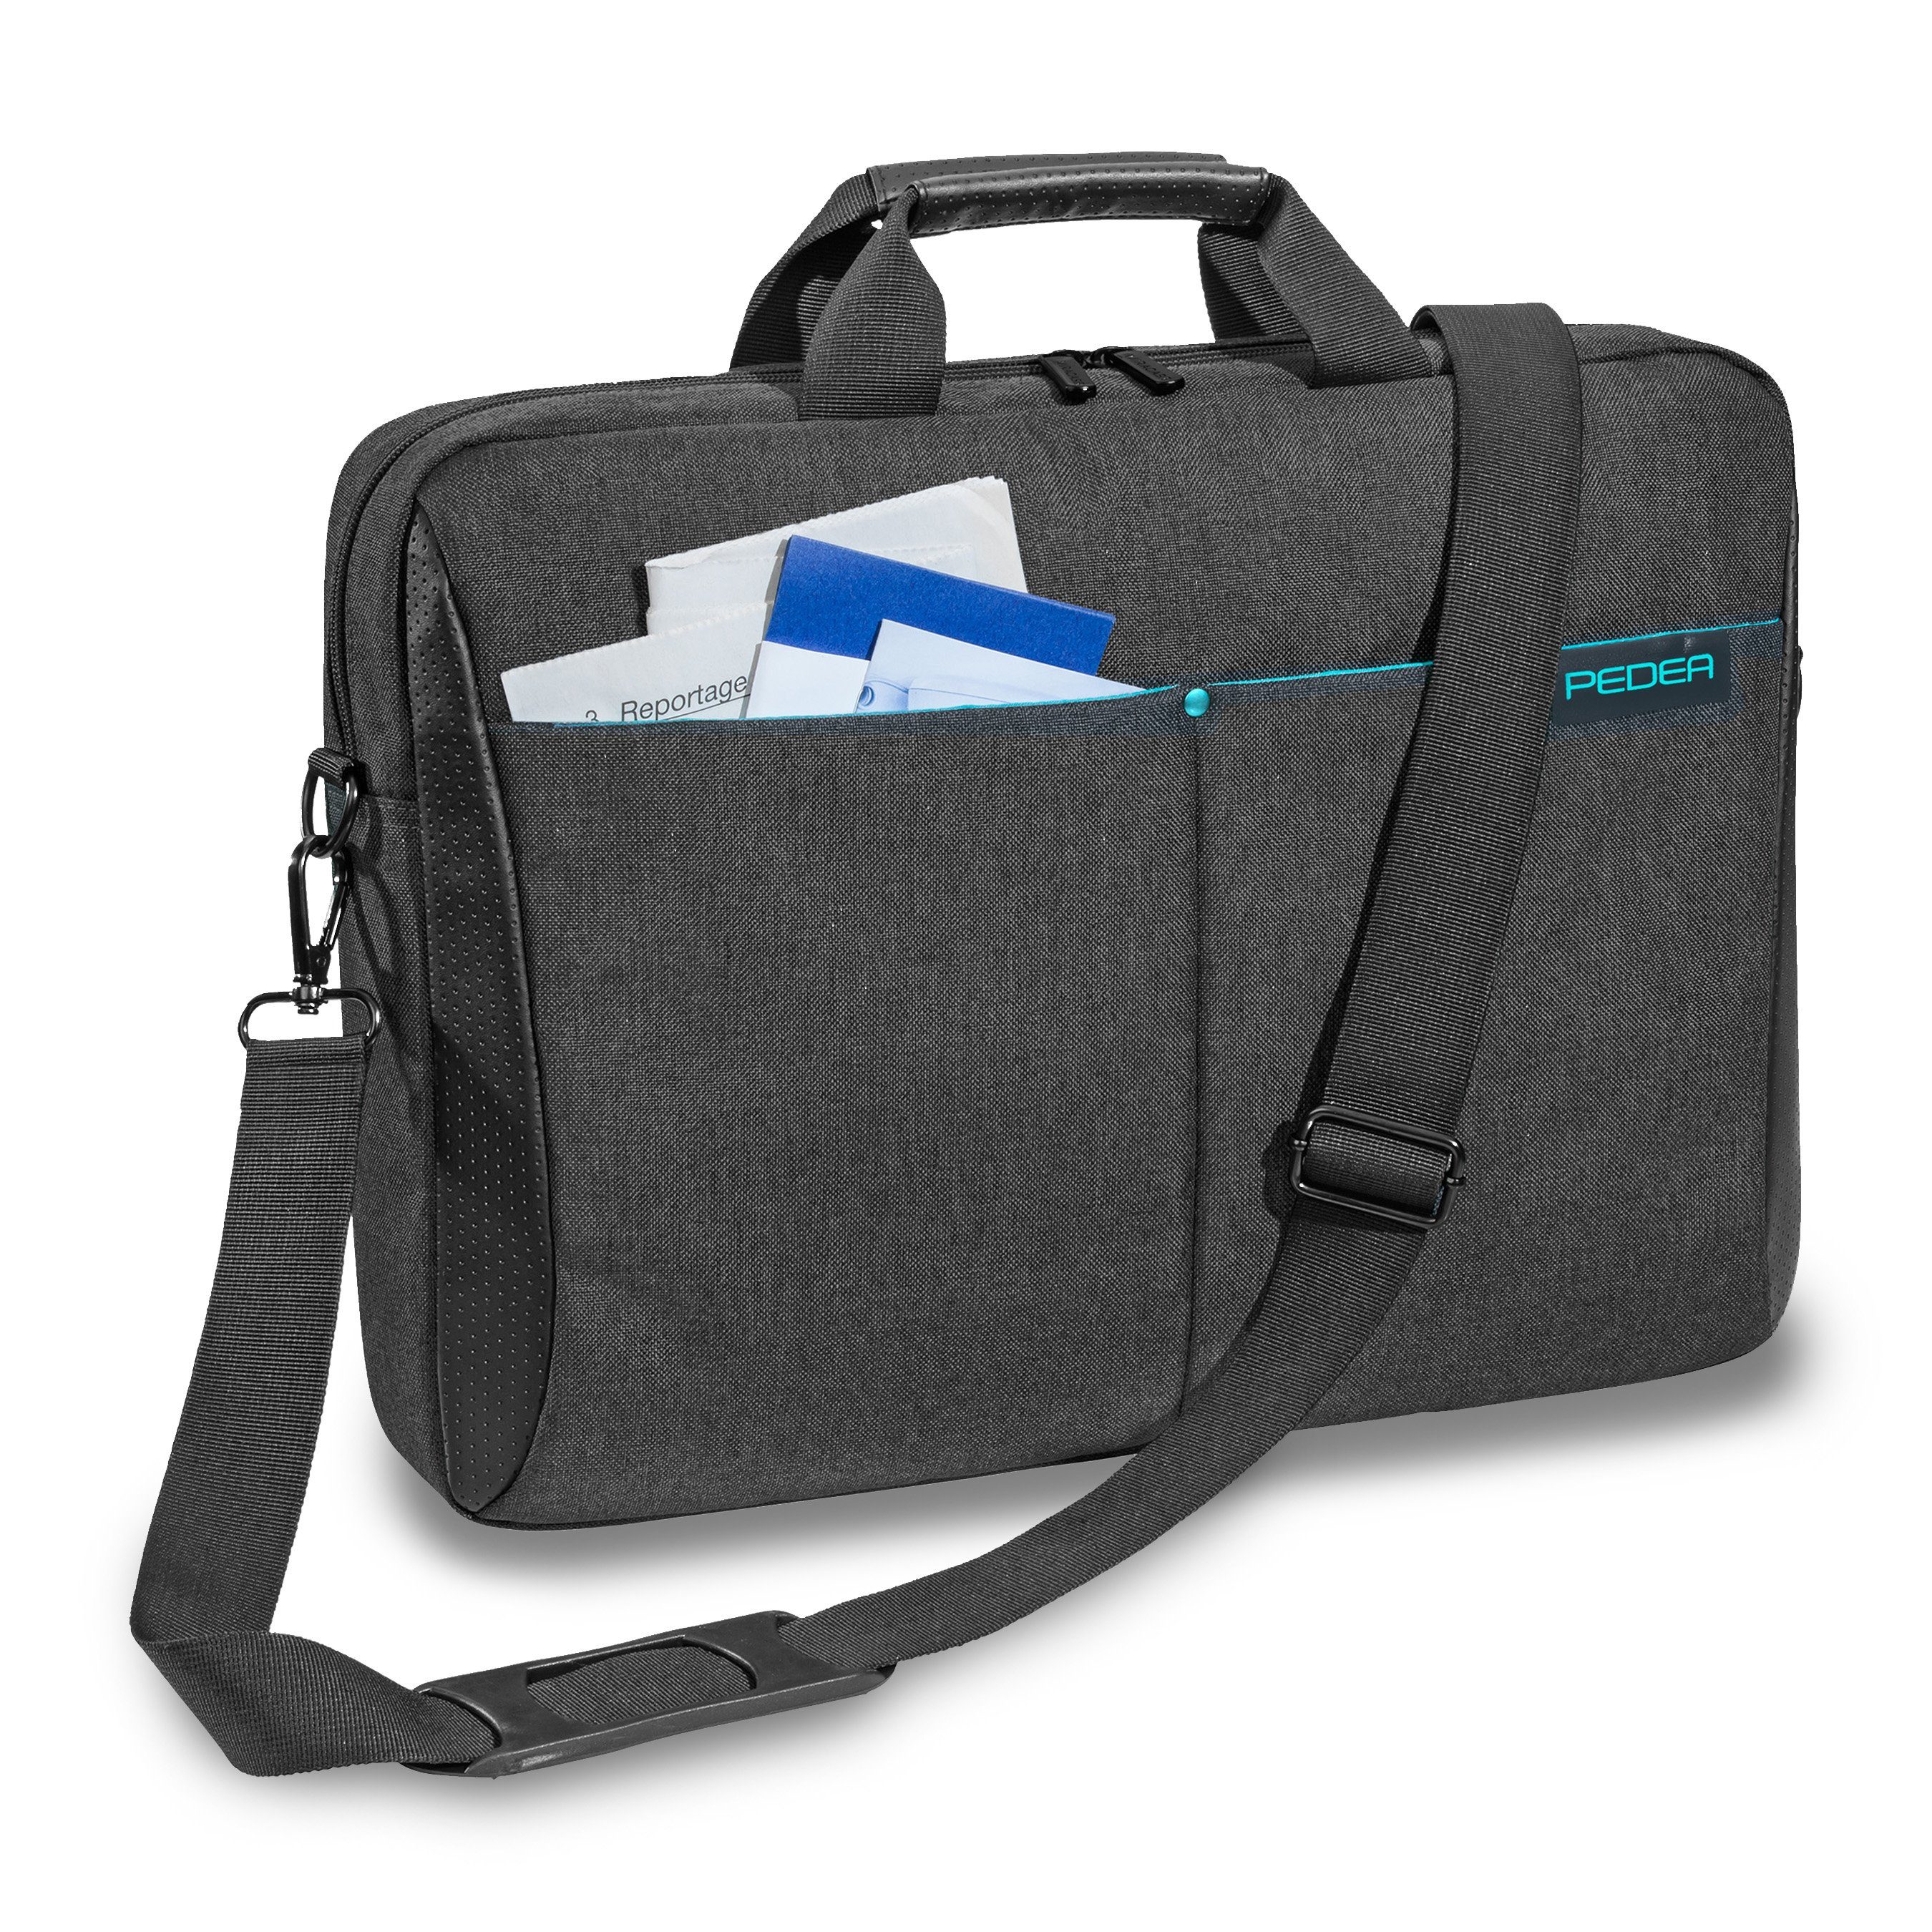 PEDEA Laptoptasche LIFESTYLE (17,3 Zoll (43,9 cm), dicke Polsterung, wasserabweisenden Materialien, einfache Handhabung, lange Reißverschlüsse